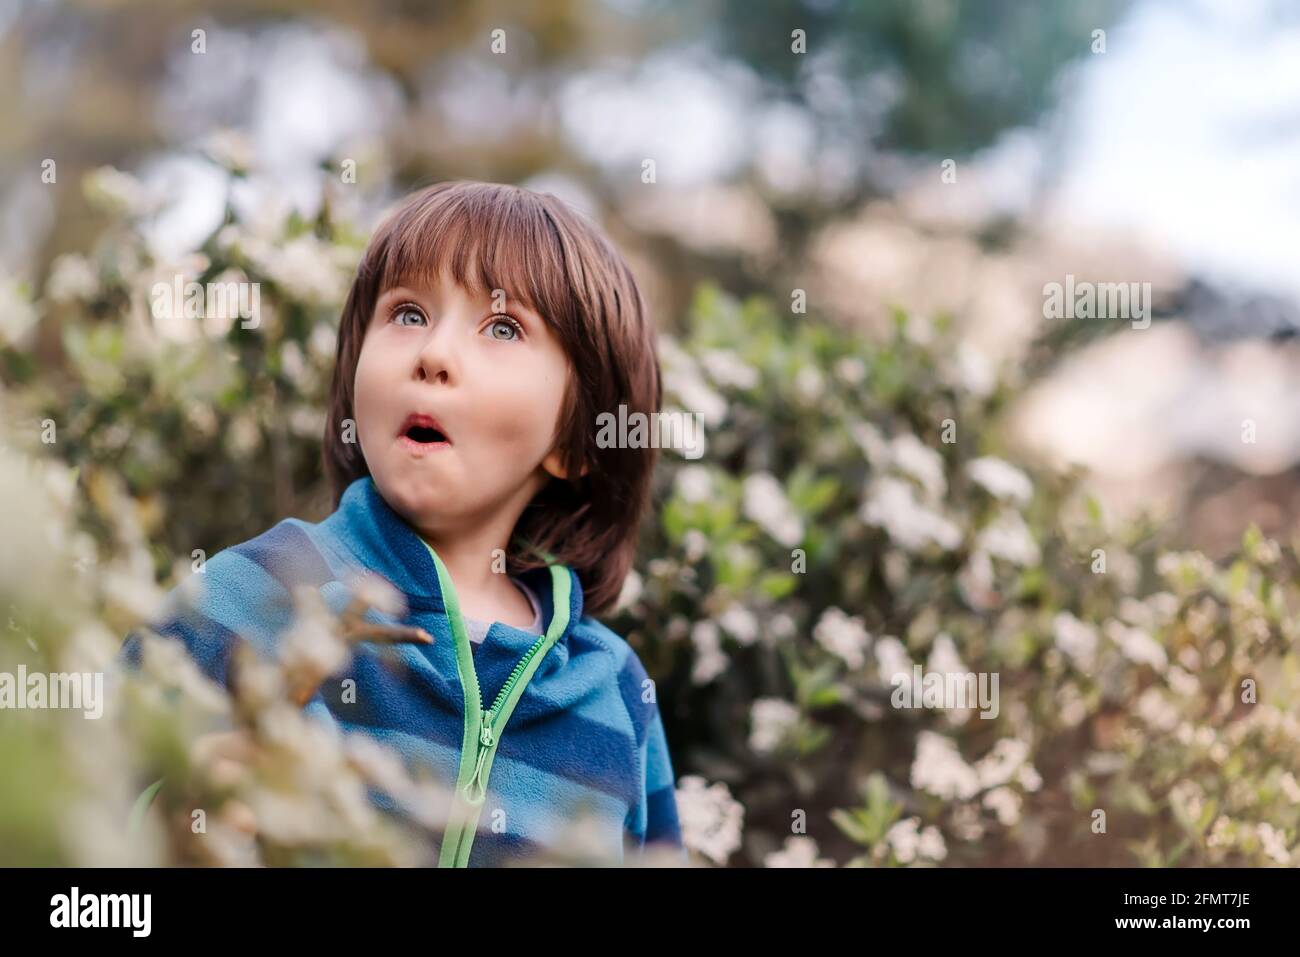 Portrait de jeune garçon surpris , expression sur le visage, enfant dans le parc en fleurs. Concept de l'émotion des enfants. Gros plan. Banque D'Images